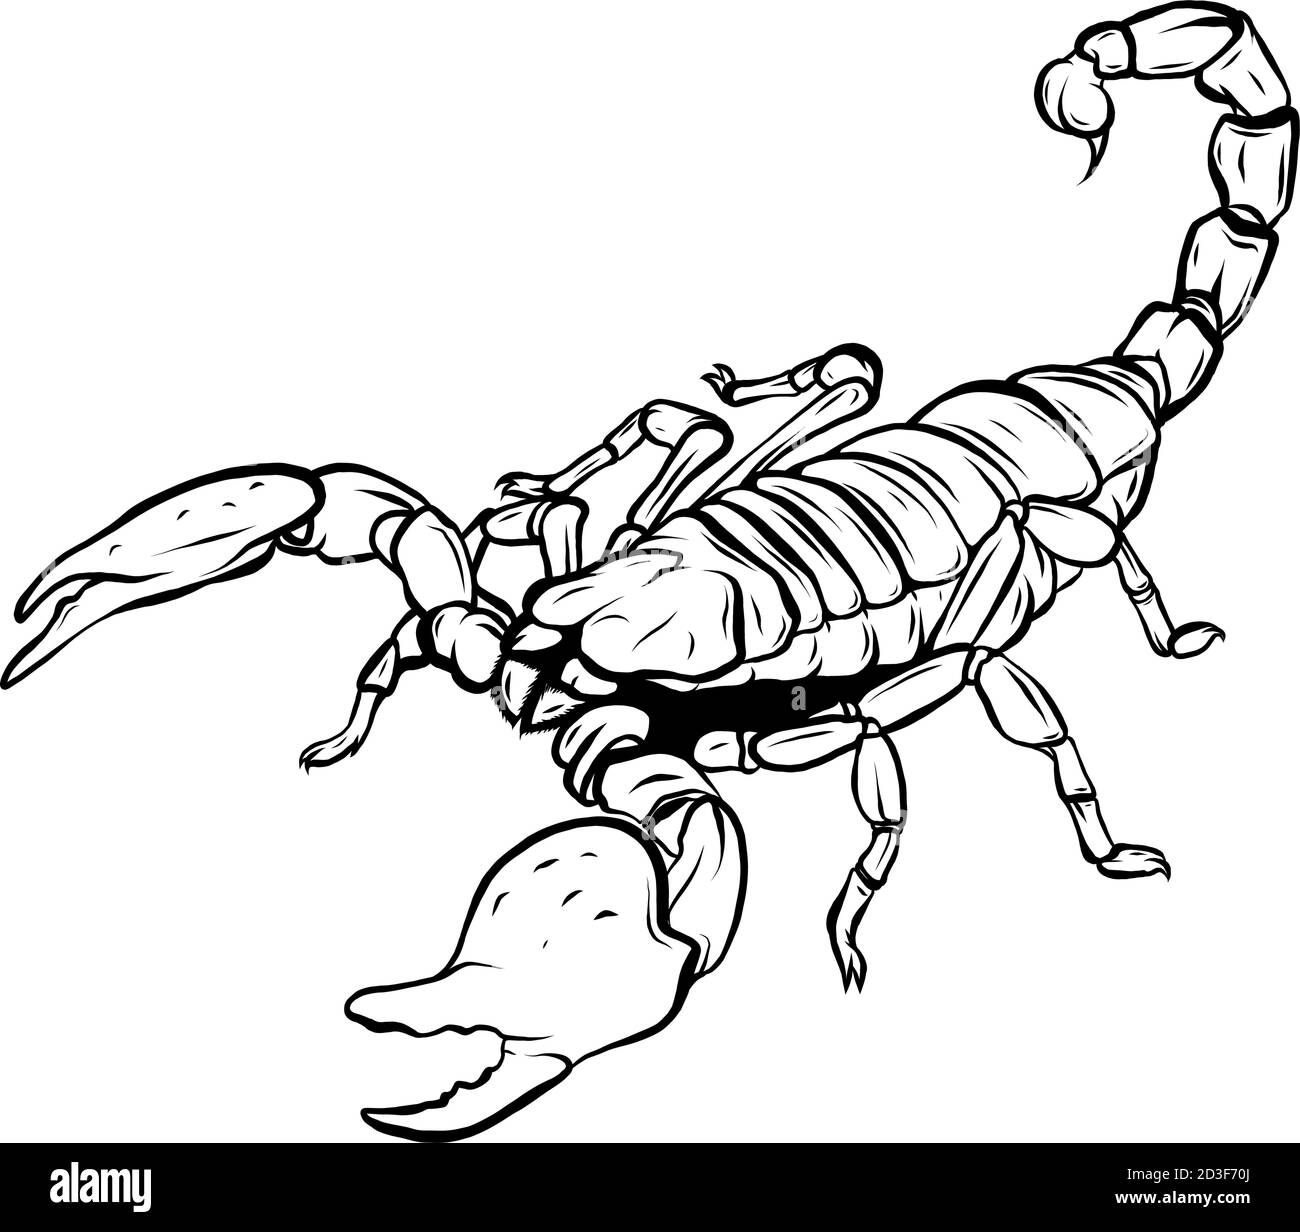 Maskottchen Ikone Illustration eines Skorpions, ein räuberischer Arachnid der Ordnung Scorpiones Stock Vektor